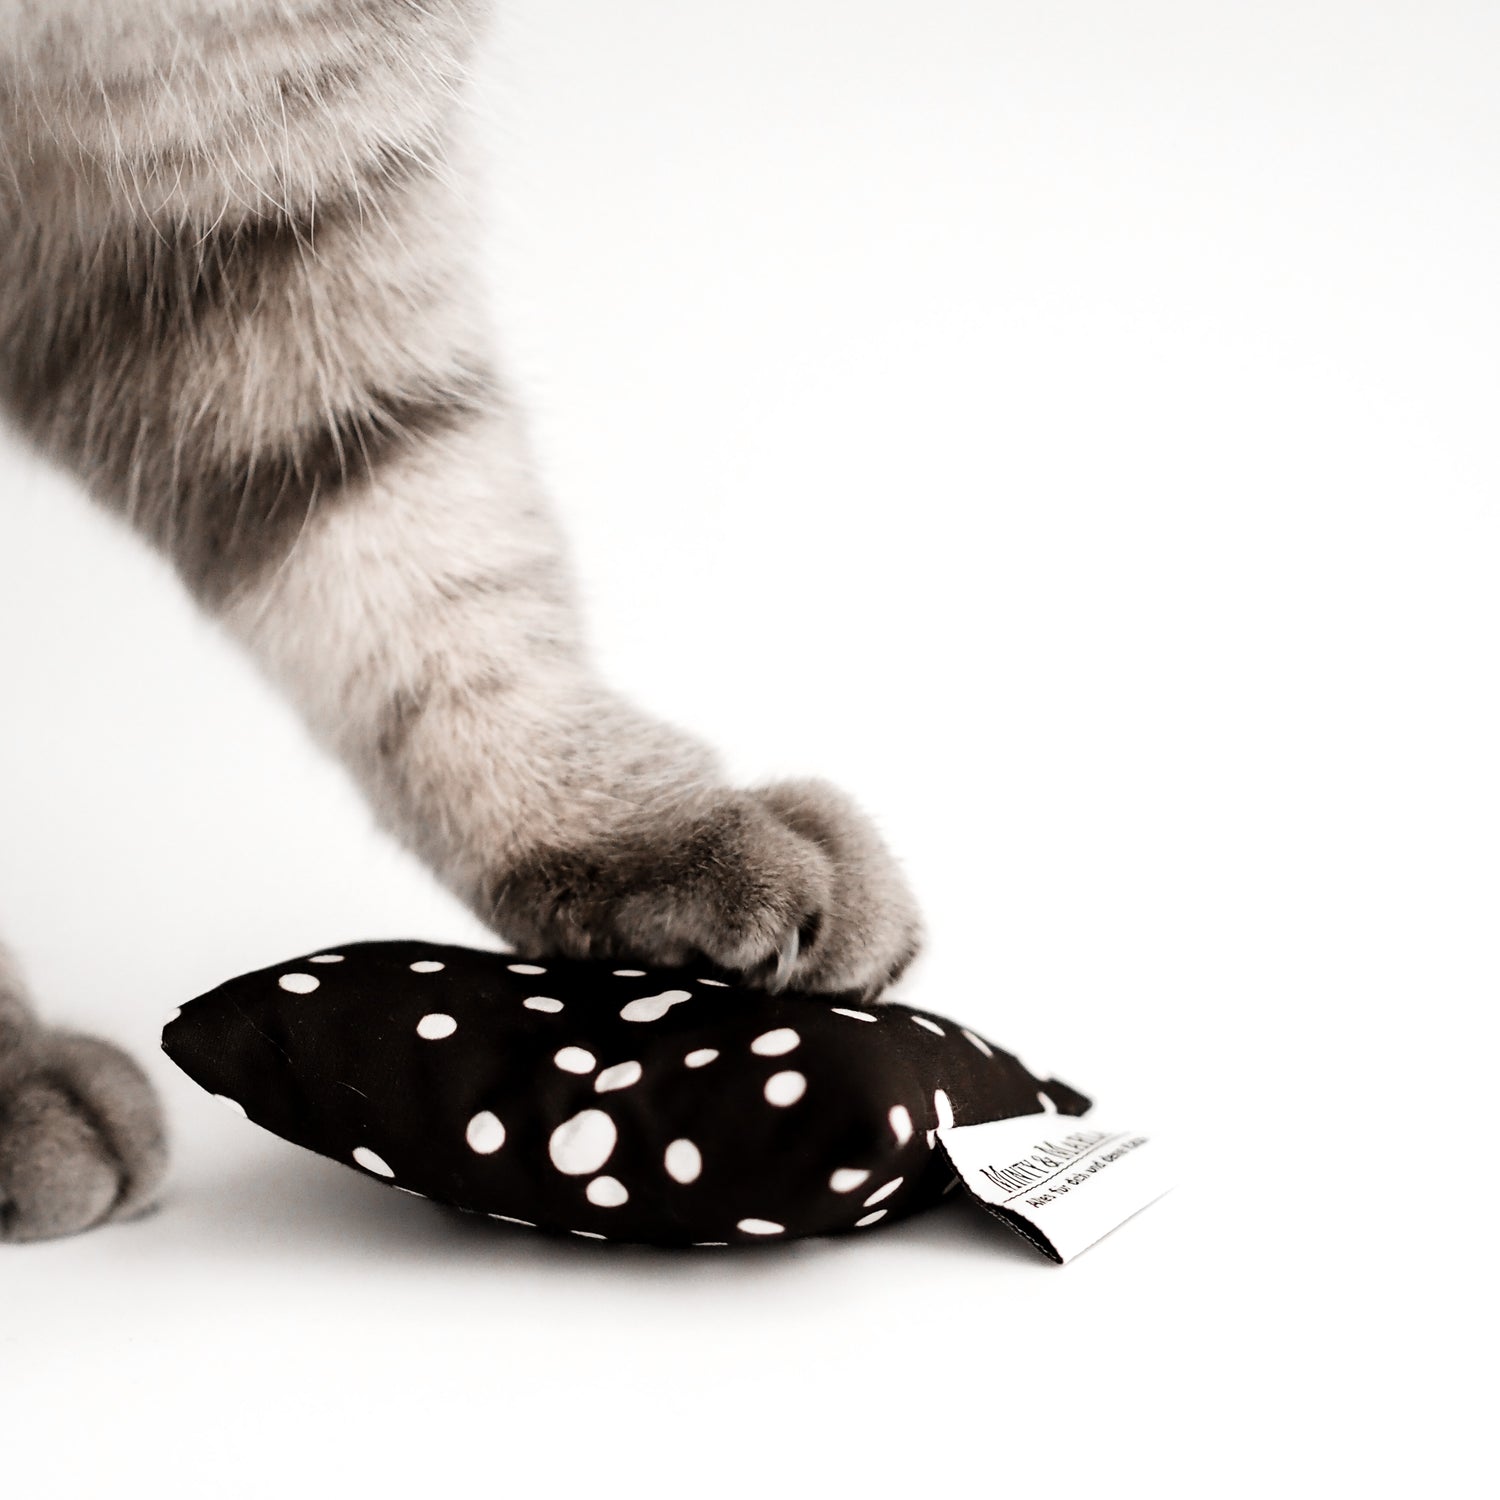 Eine grau getigerte Katze hat ihre Pfote auf einem schwarzen Katzenminzekissen mit weißen Punkten abgestellt.